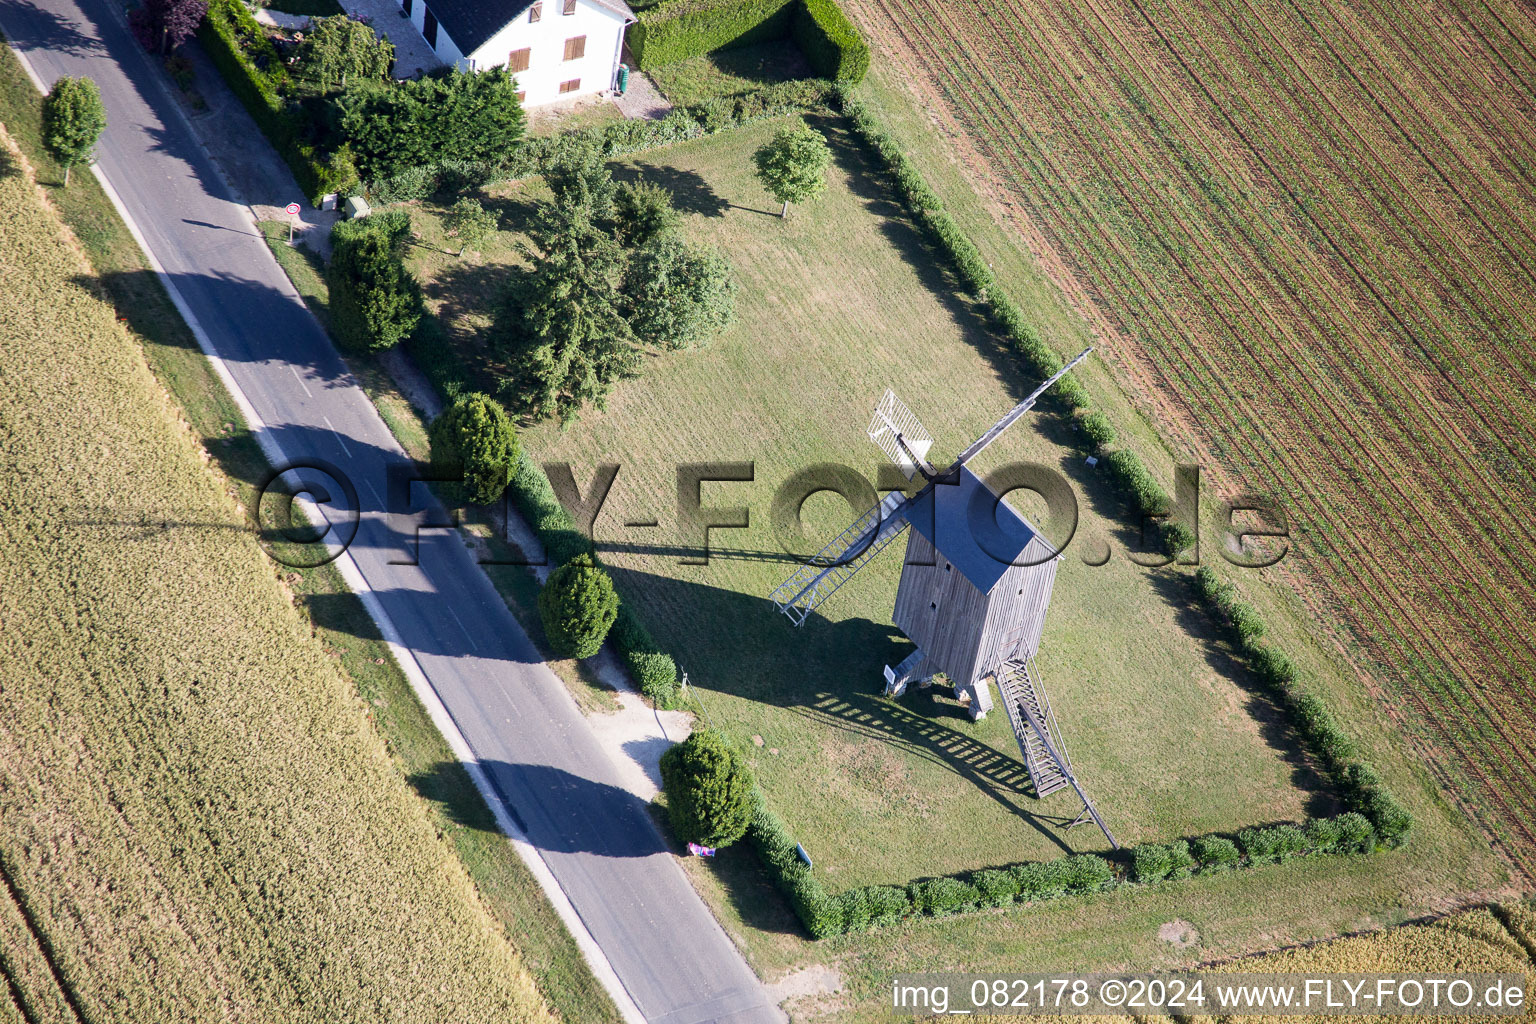 Vue aérienne de Moulin à vent historique sur la ferme d'une ferme en bordure de champs cultivés à Talcy dans le département Loir et Cher, France